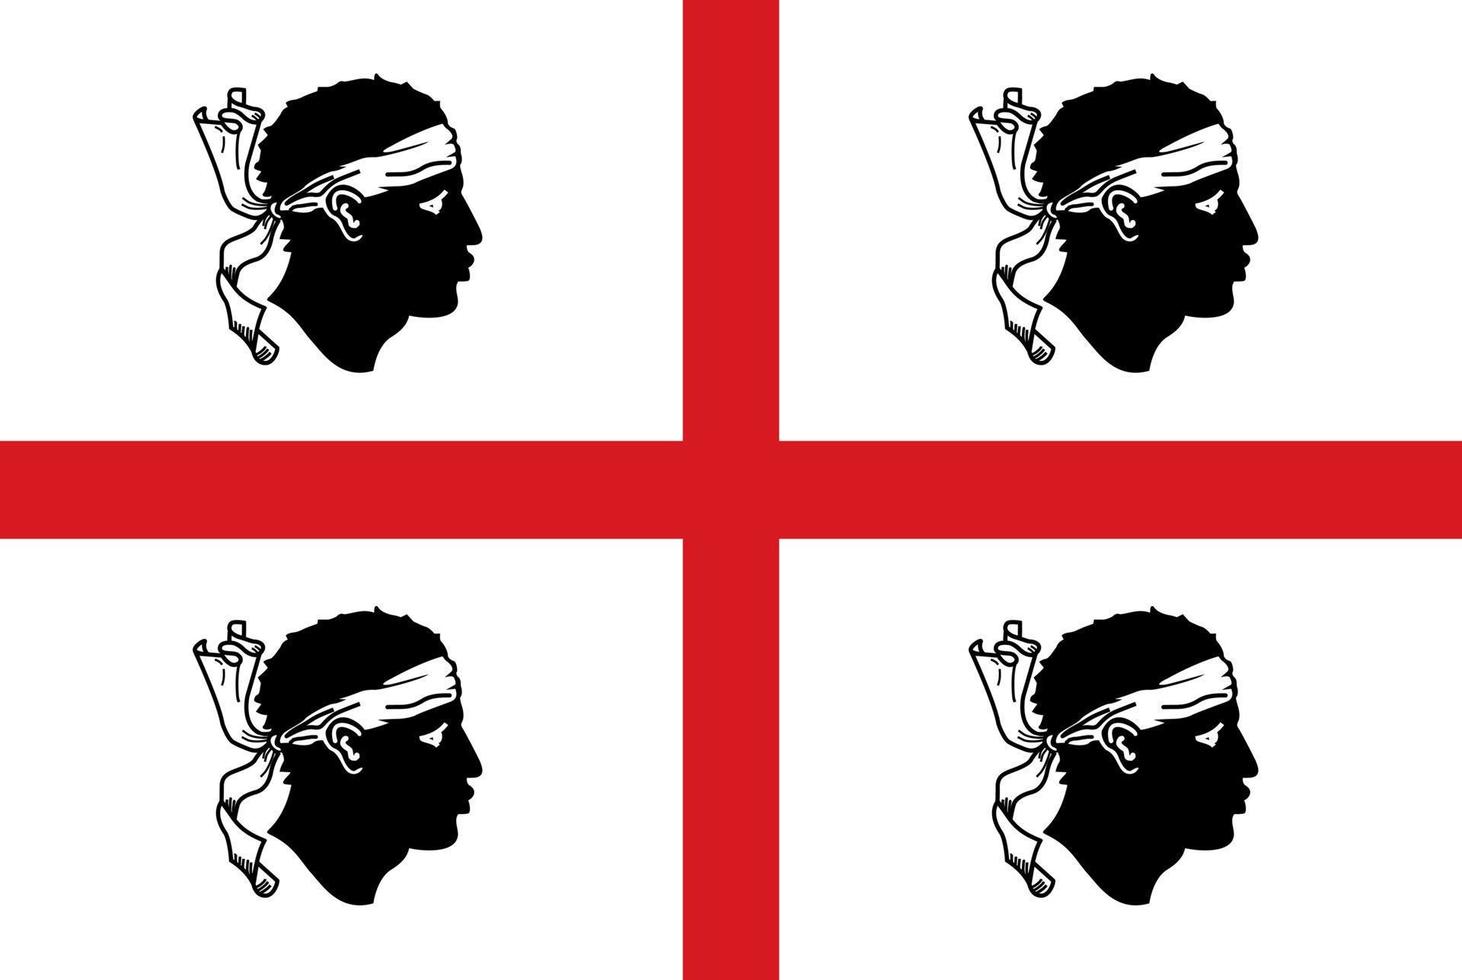 Sardinia Flag. Region of Italy. Vector illustration.